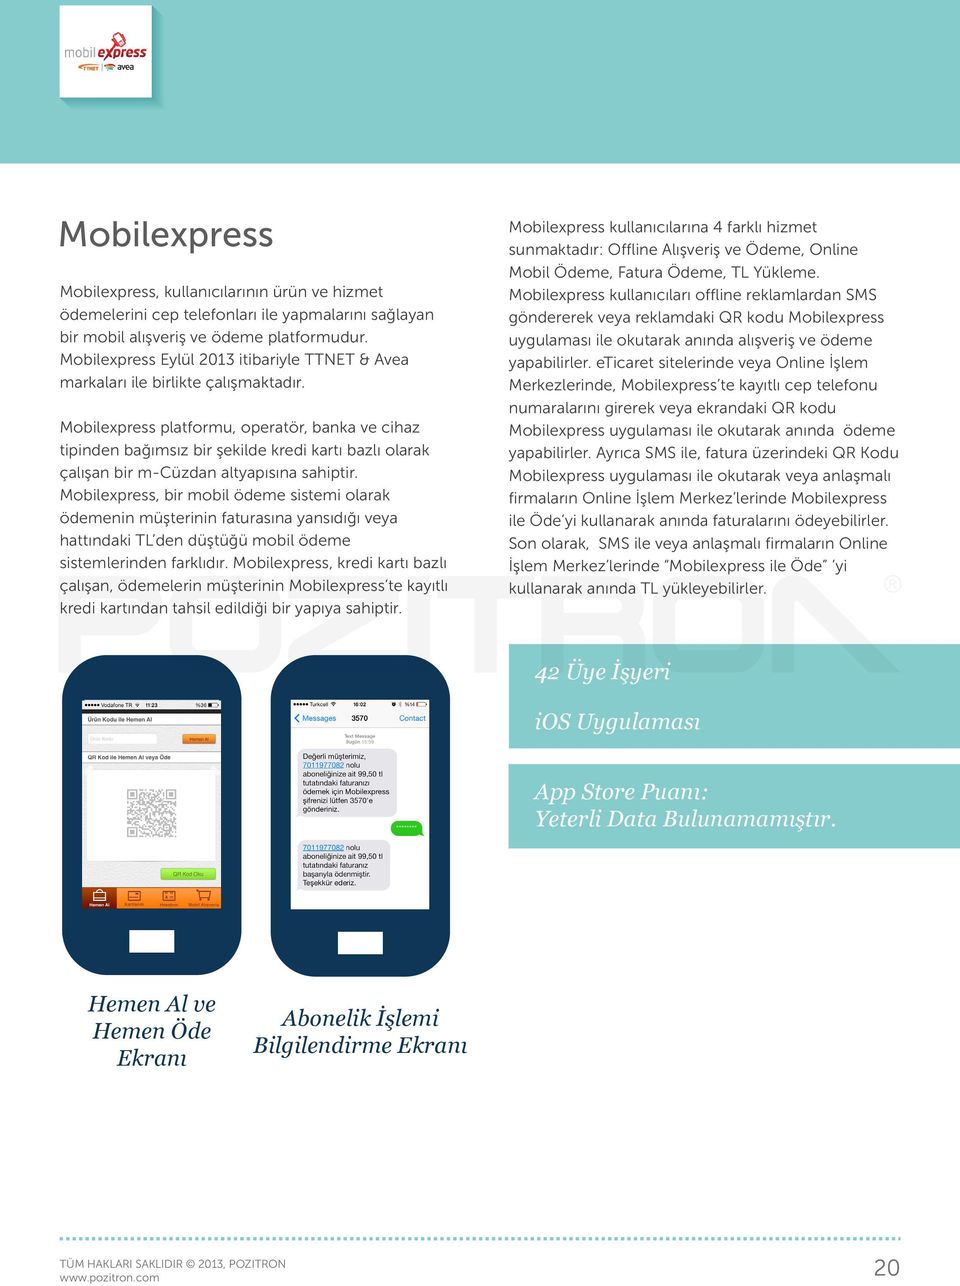 Mobilexpress platformu, operatör, banka ve cihaz tipinden bağımsız bir şekilde kredi kartı bazlı olarak çalışan bir m-cüzdan altyapısına sahiptir.